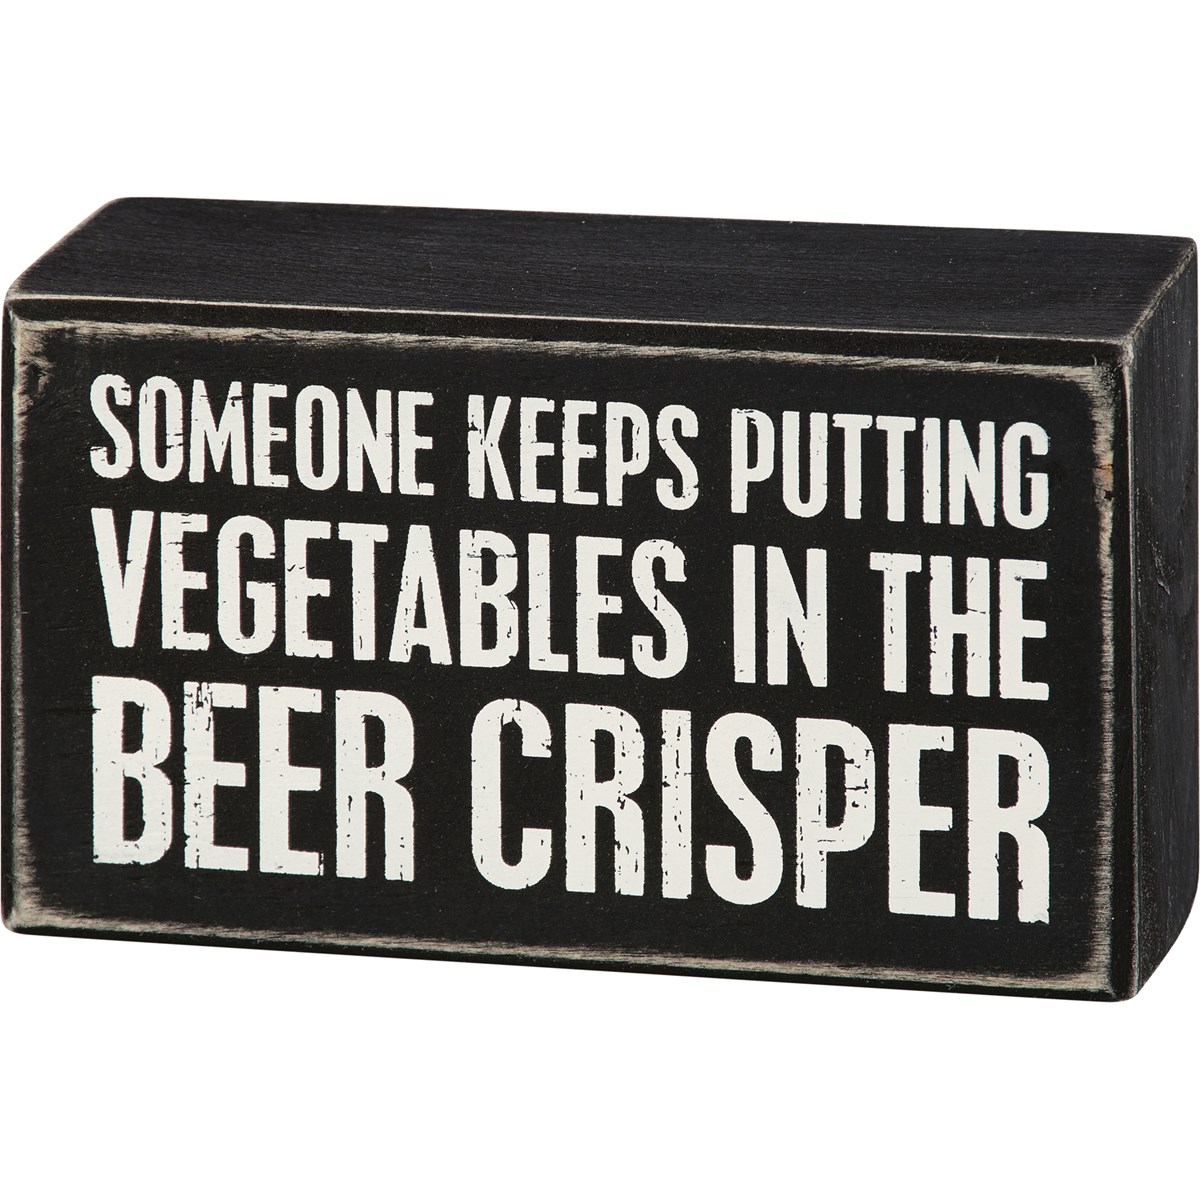 Beer Crisper Box Sign - Wood